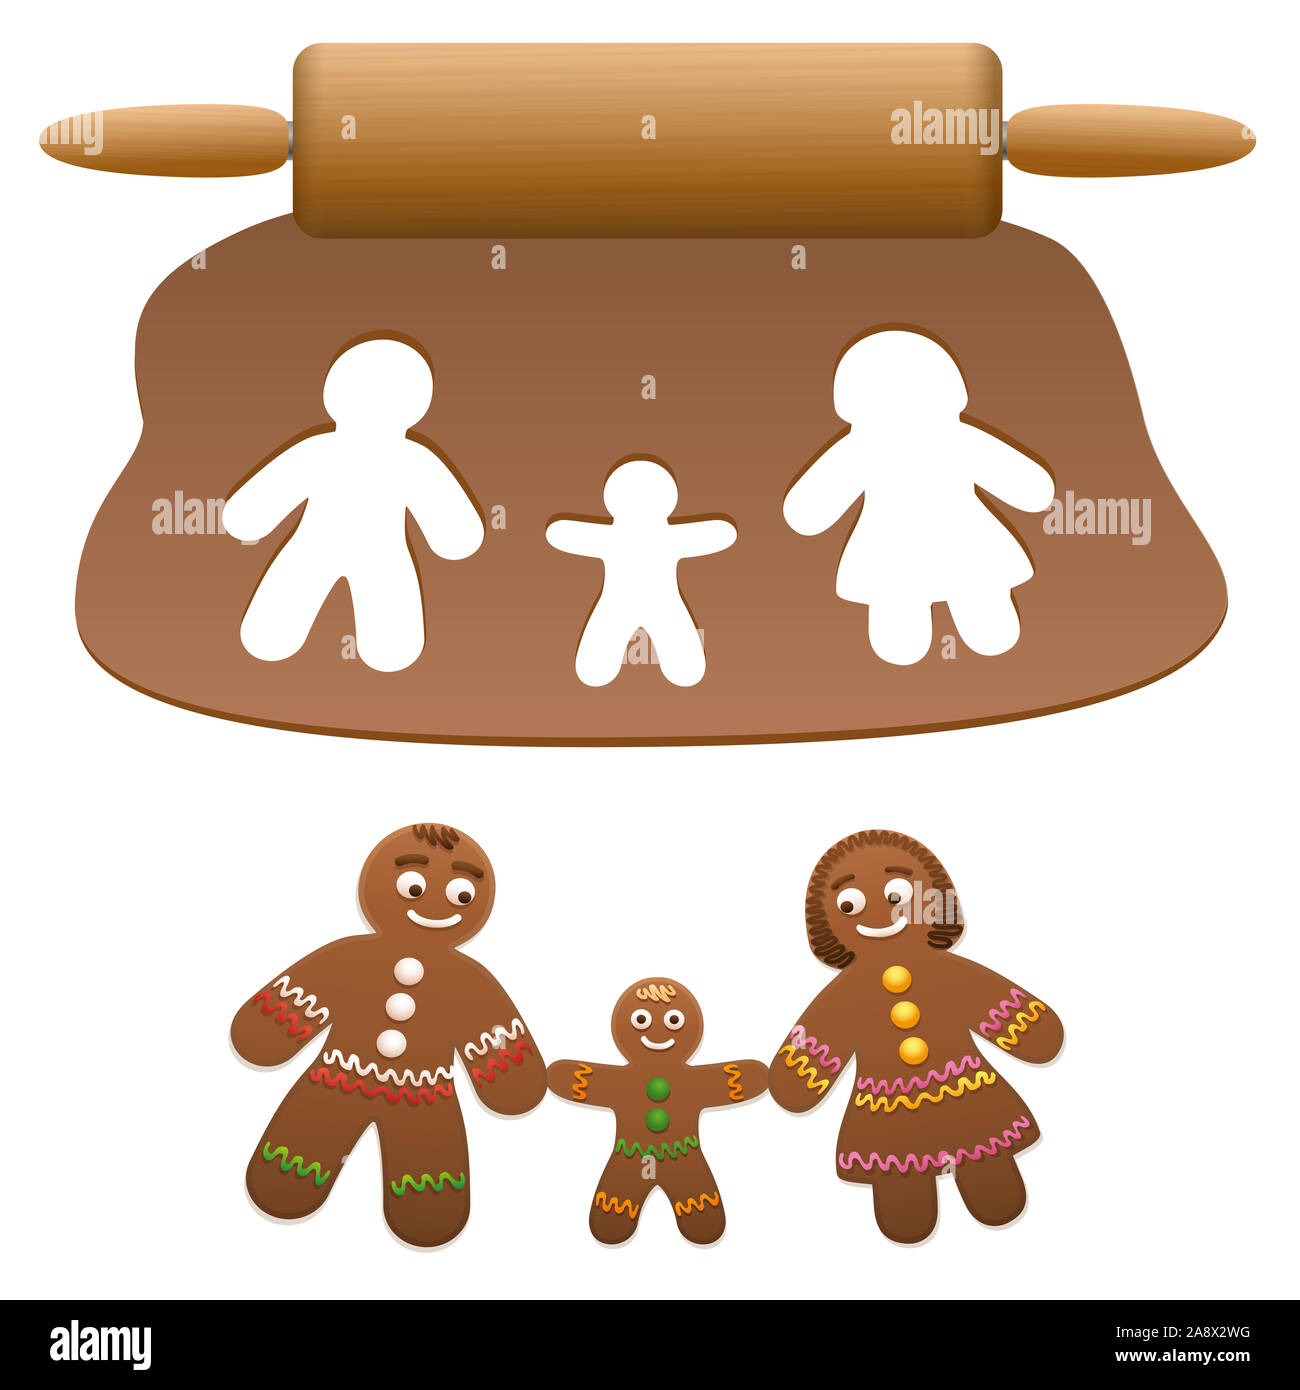 Famille d'épice, père, mère, enfant. Les parents heureux avec leur fils coupé de pâte lebkuchen - illustration sur fond blanc. Banque D'Images